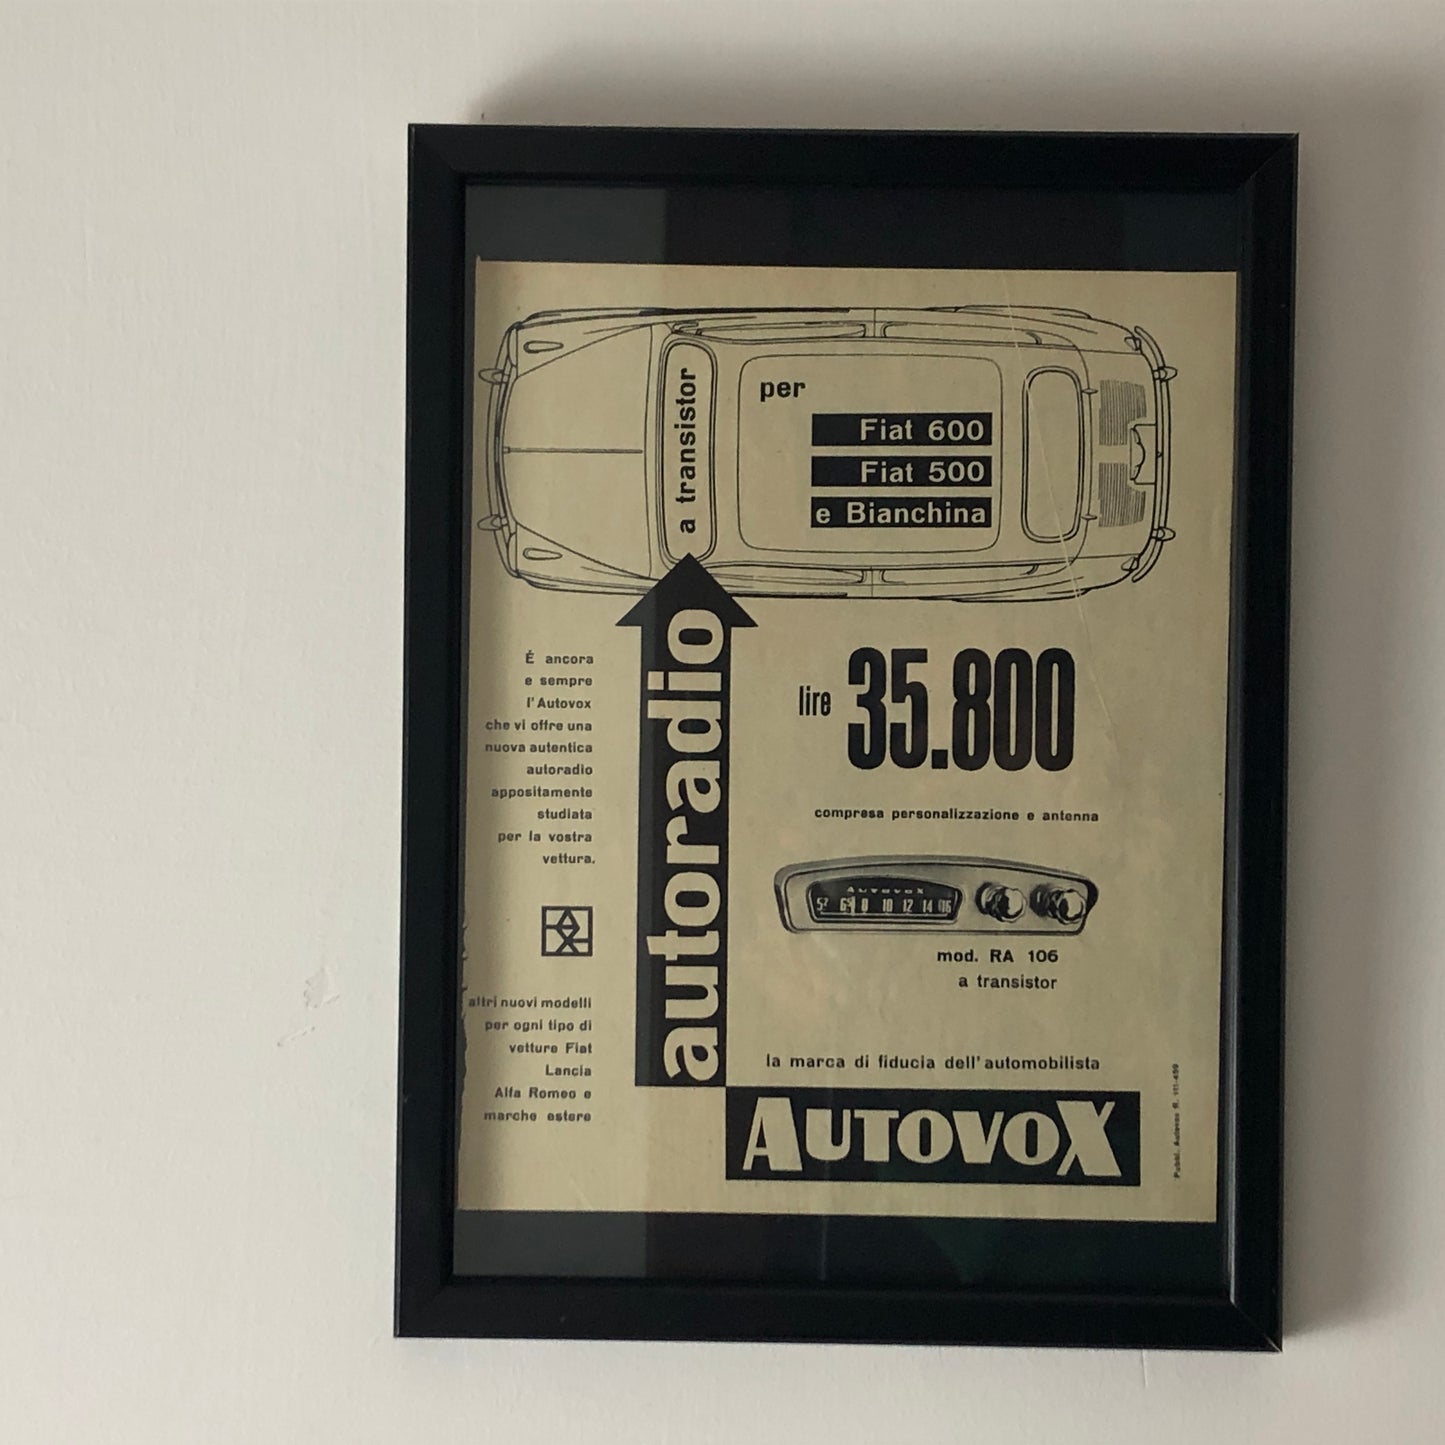 Autovox, Pubblicità Anno 1959 Autovox Autoradio per Fiat 600 Fiat 500 e Bianchina